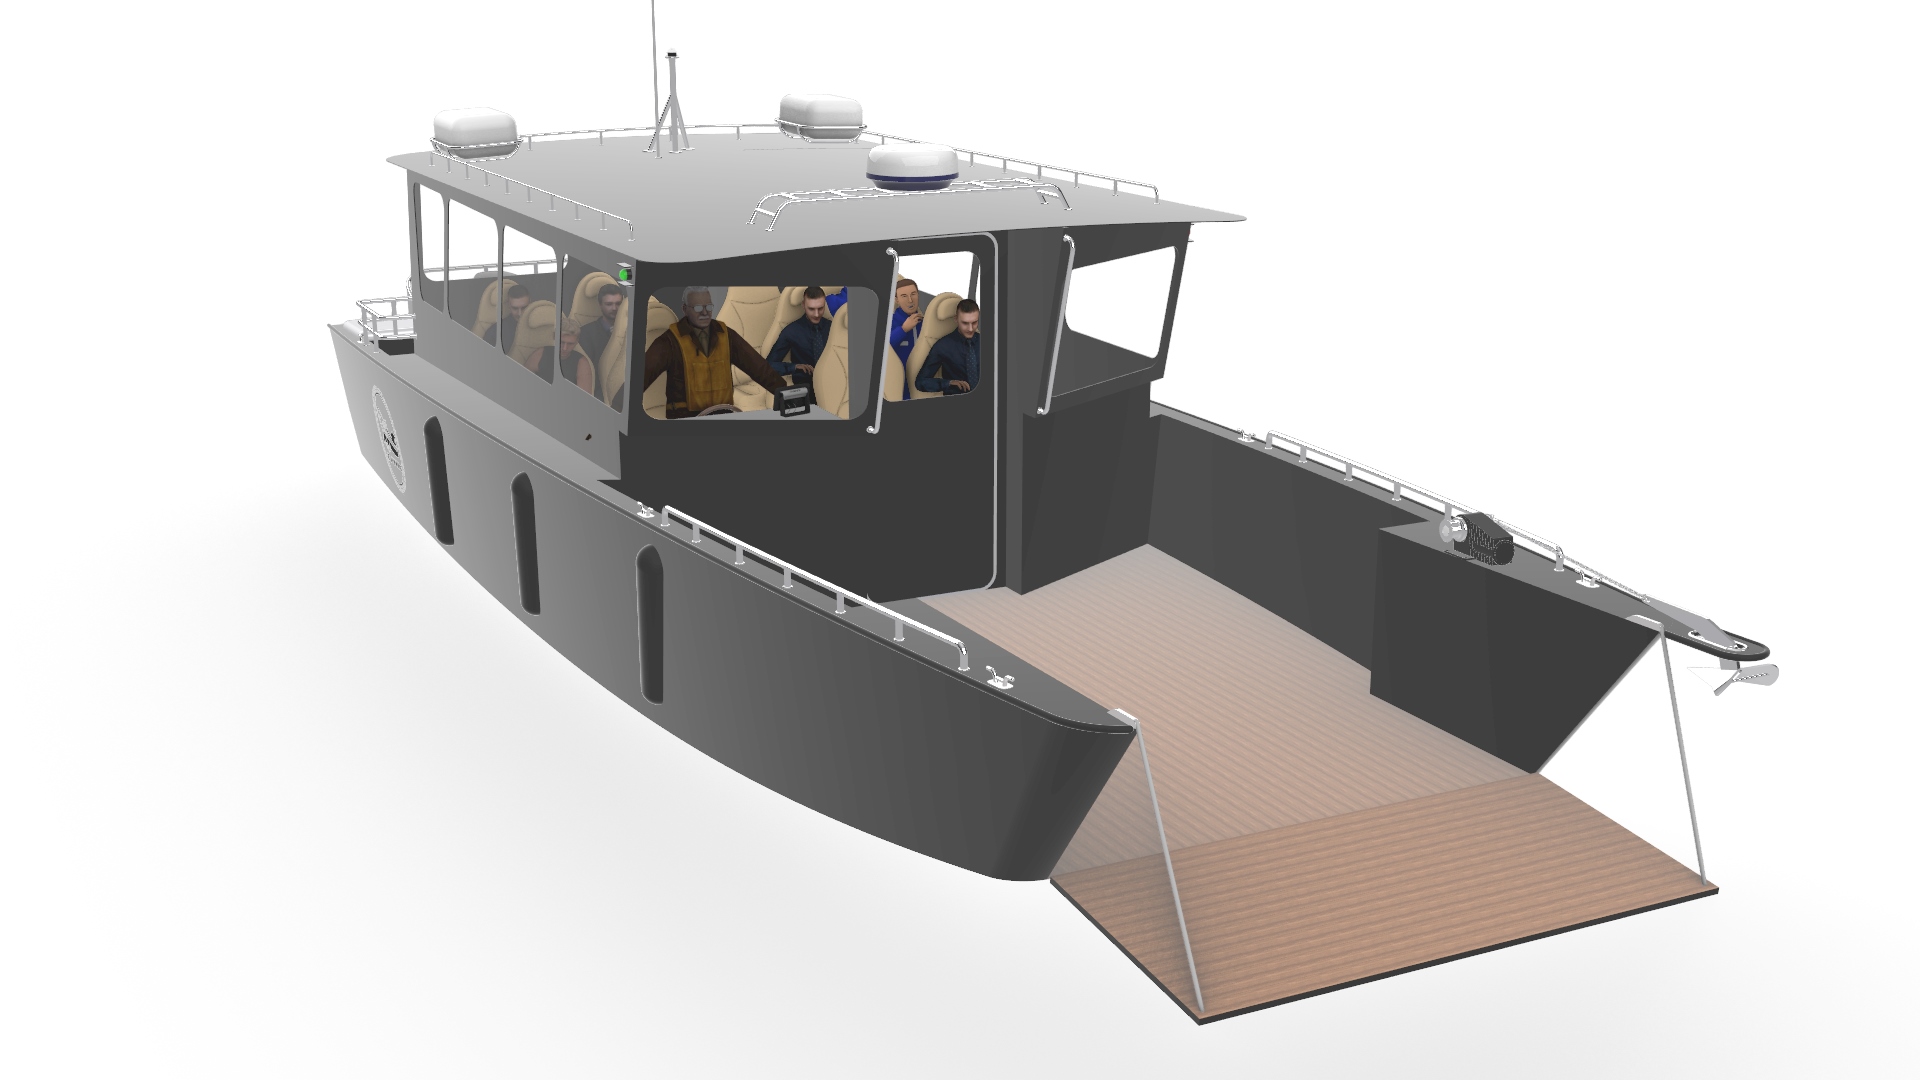 Проектирование маломерного судна для прибрежных пассажирских перевозок и досуга на воде (с повышенной или интегрированной рубкой) на основе эскизного проекта собственной разработки